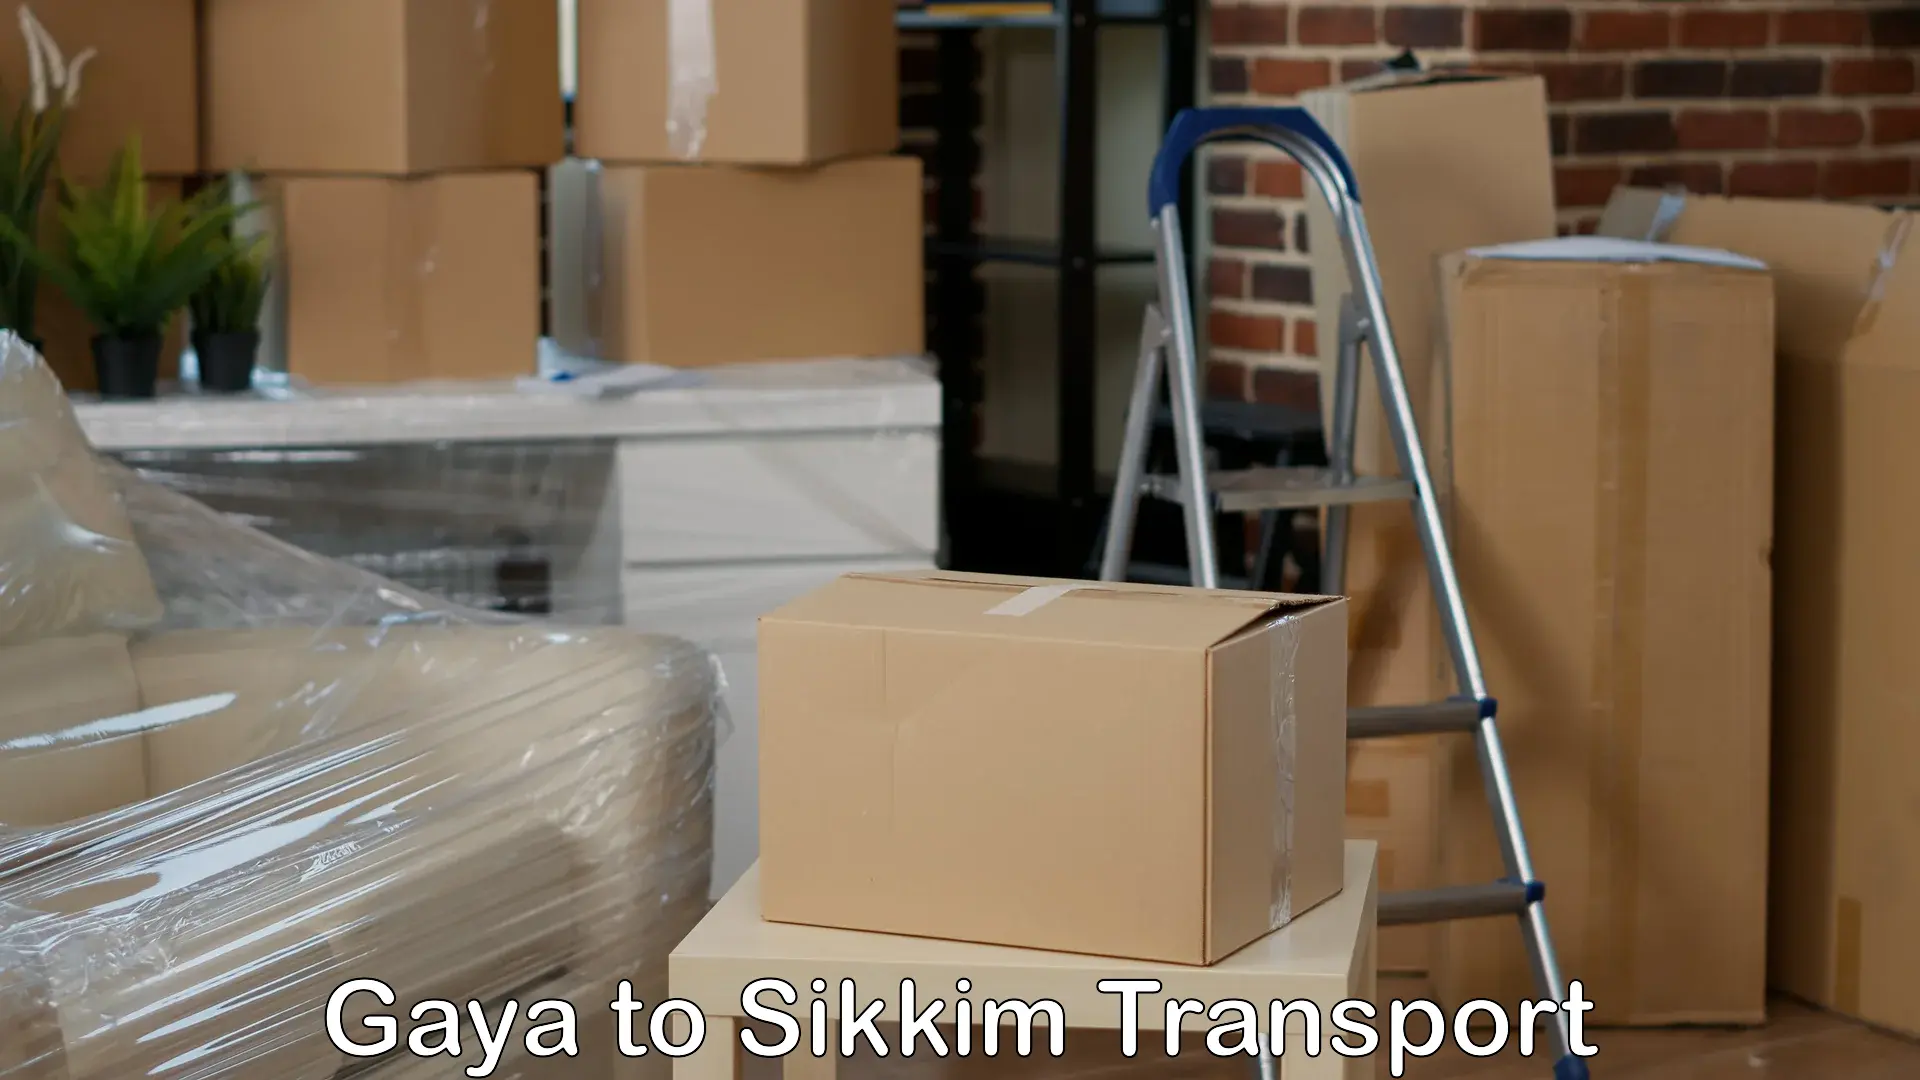 Shipping services in Gaya to Mangan